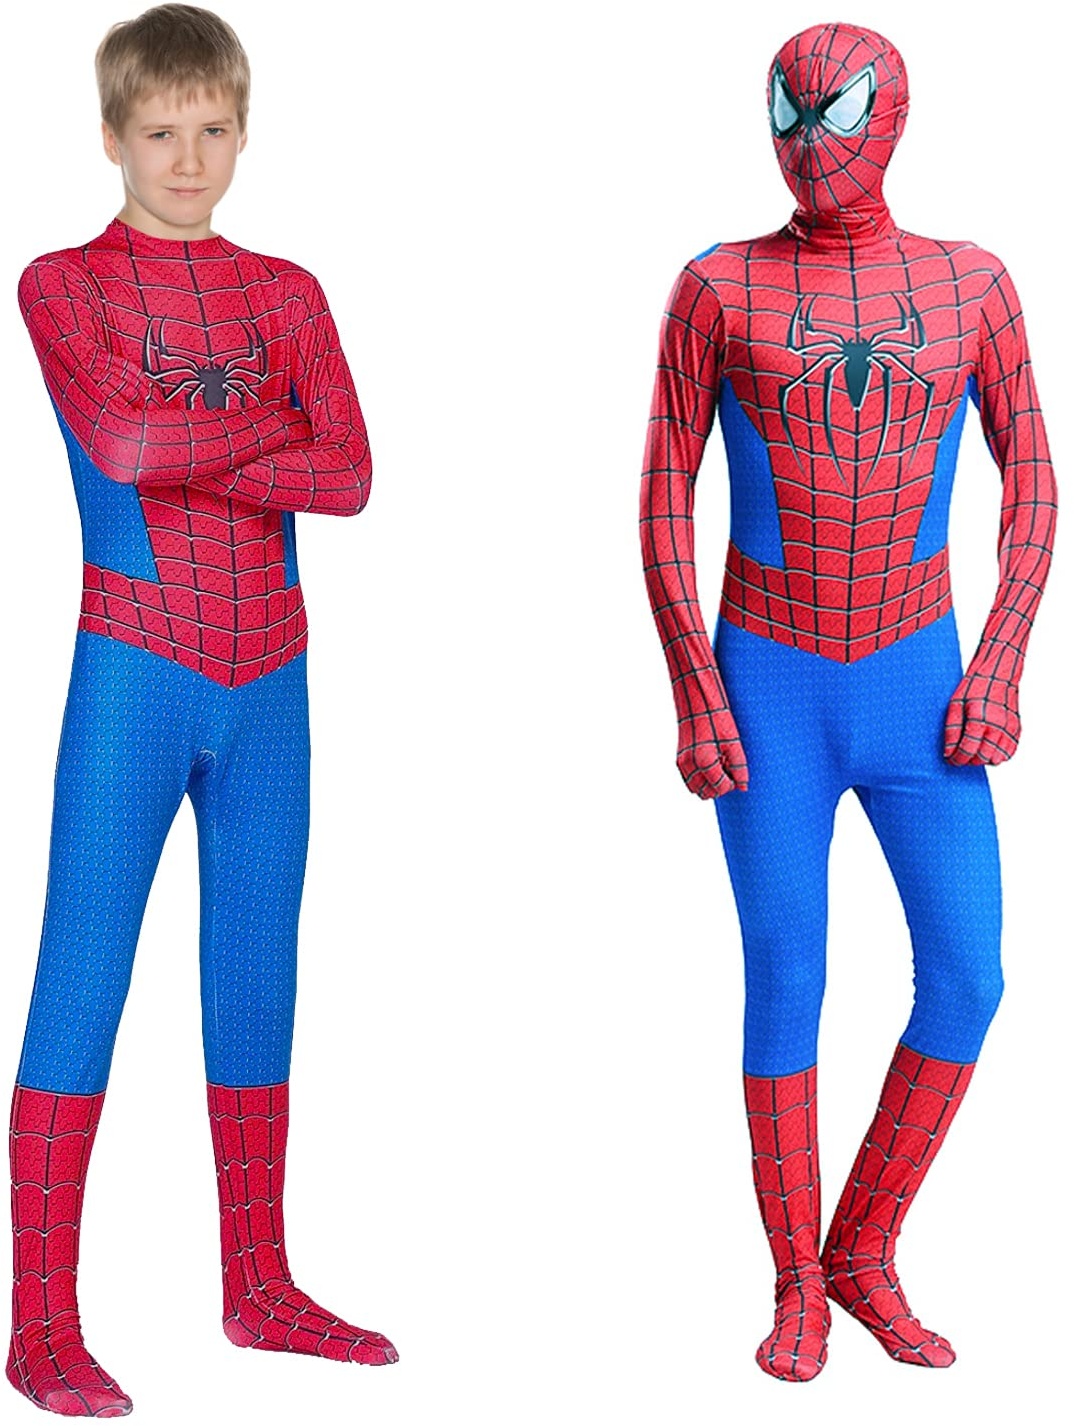 EMHTHME Superhelden Kostüm|Spiderman Kostüm Kinder|Spiderman Bodysuit|Jungen Mädchen 3D Verkleidung Superheld Cosplay Party Kostüm(The Amazing Spider-Man) 100-110cm